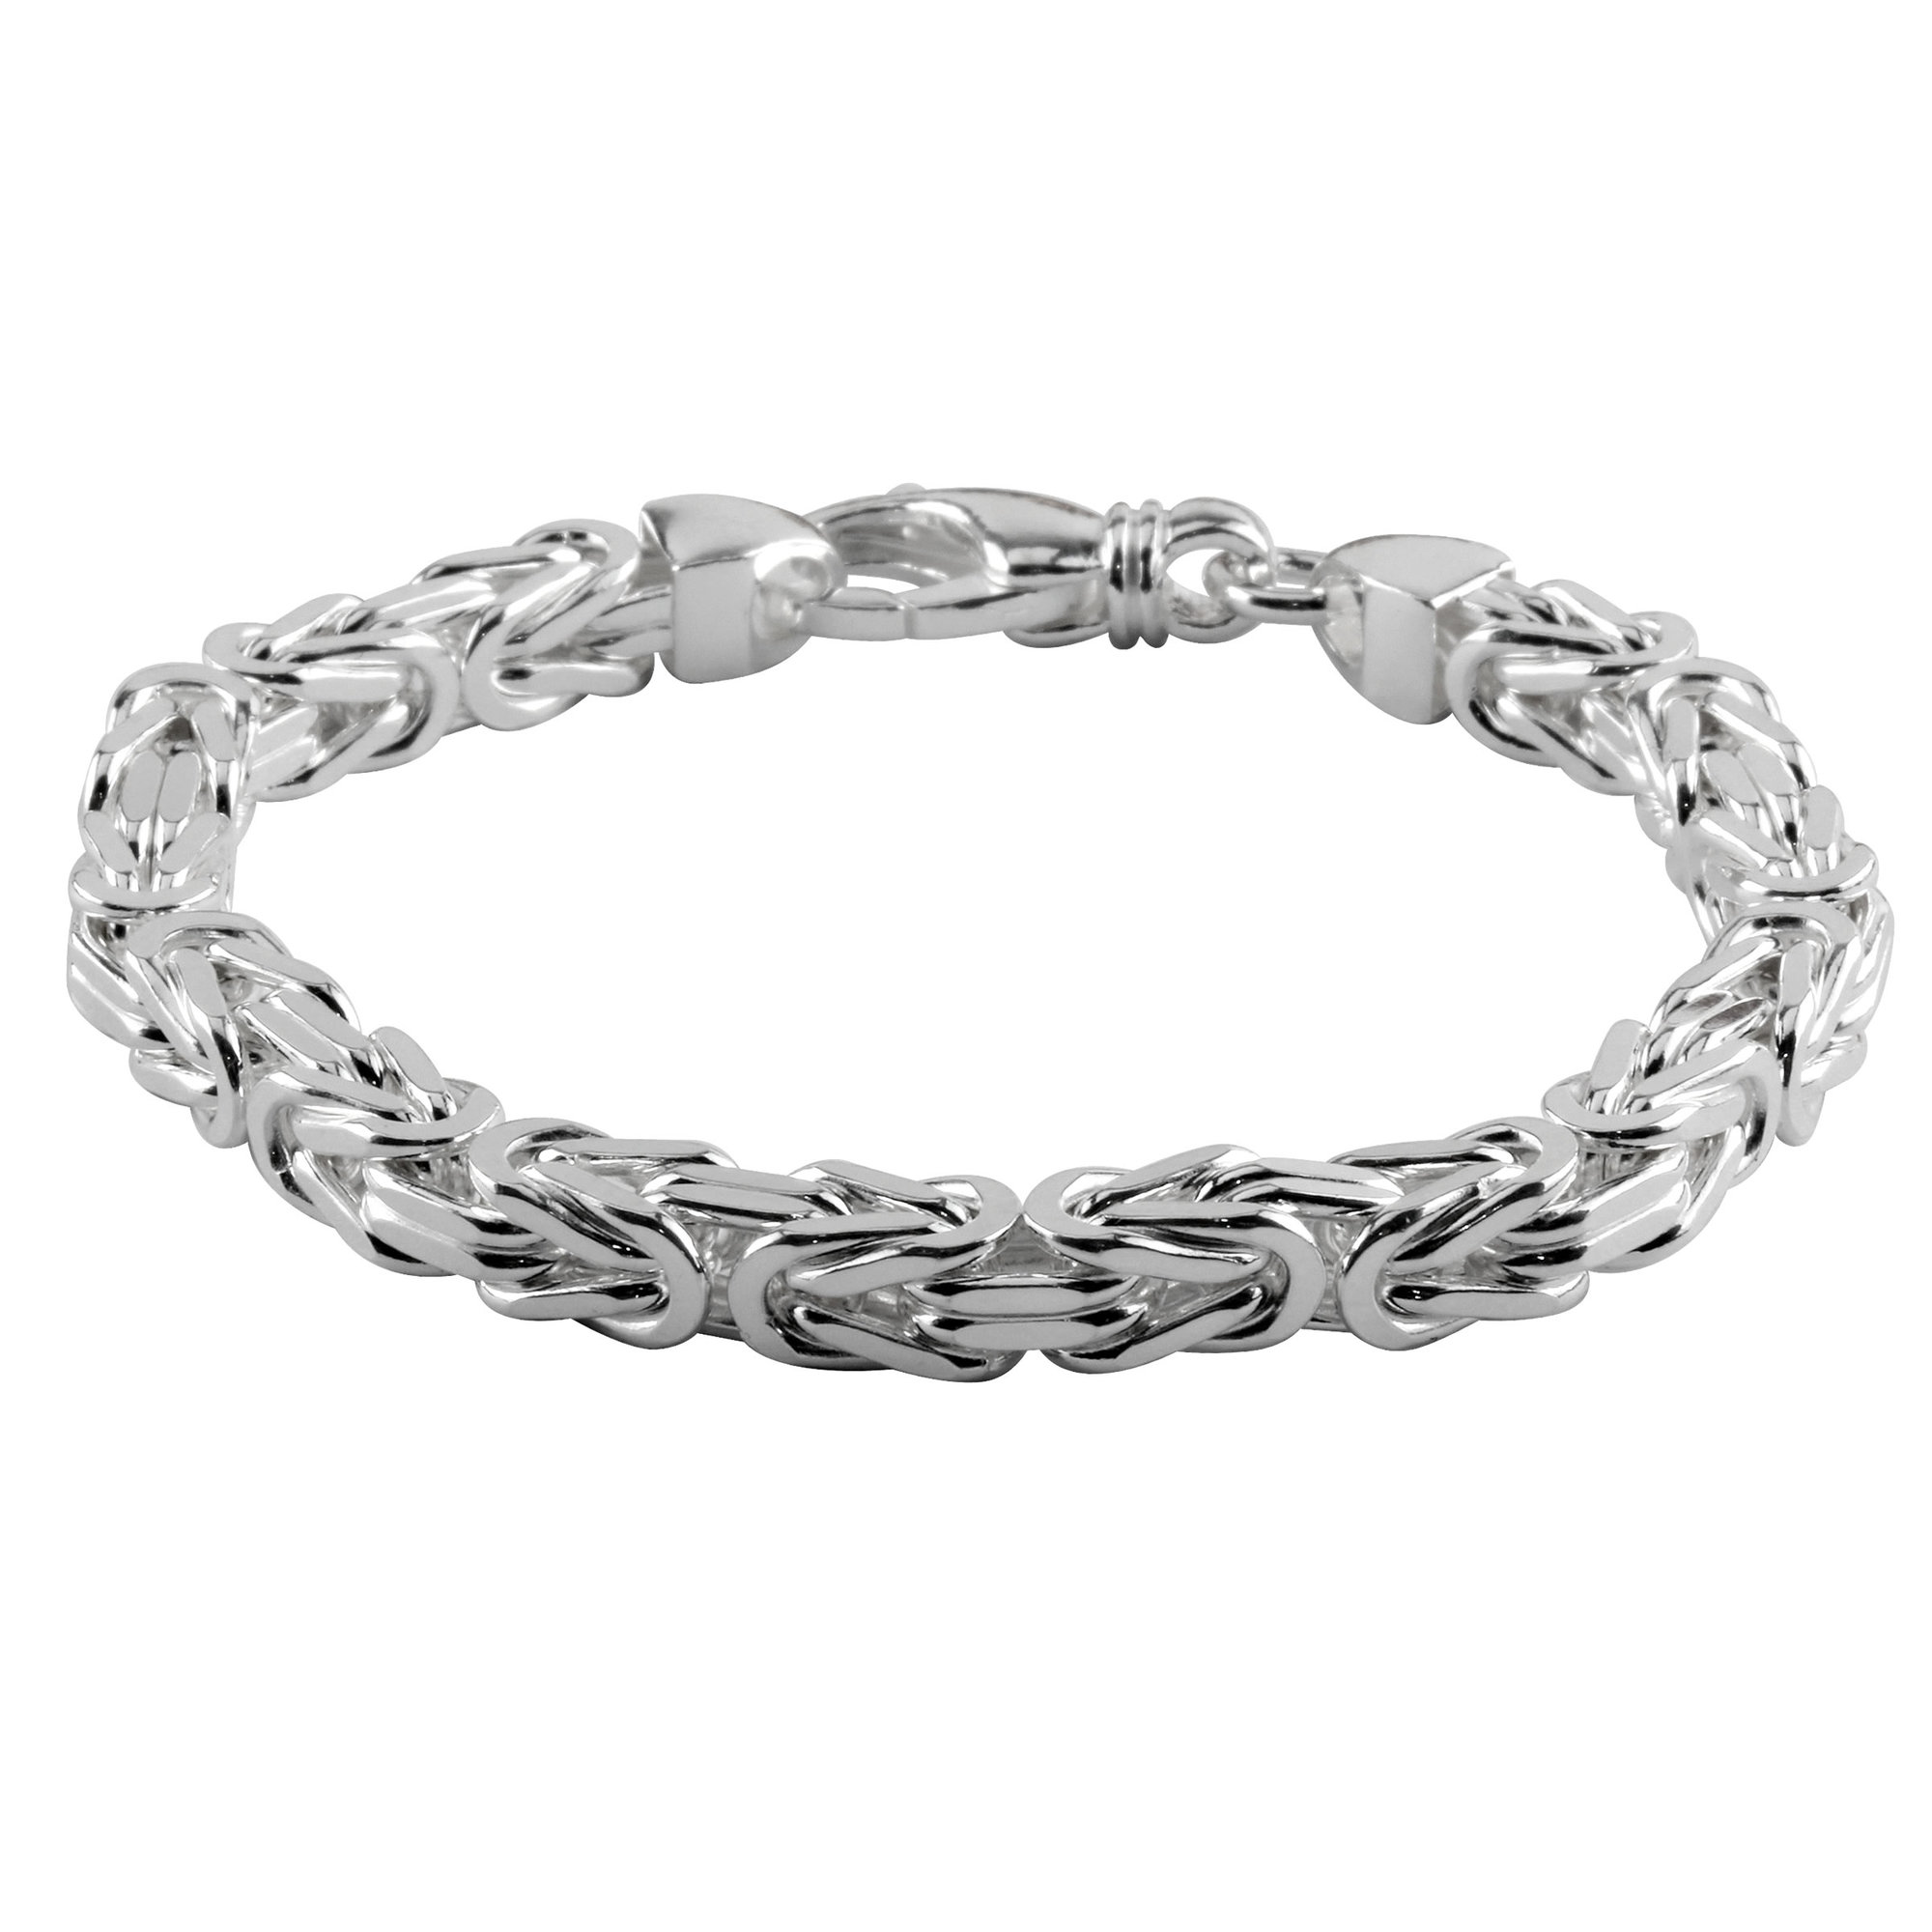 Silver Men's Bracelet - Byzantine Design